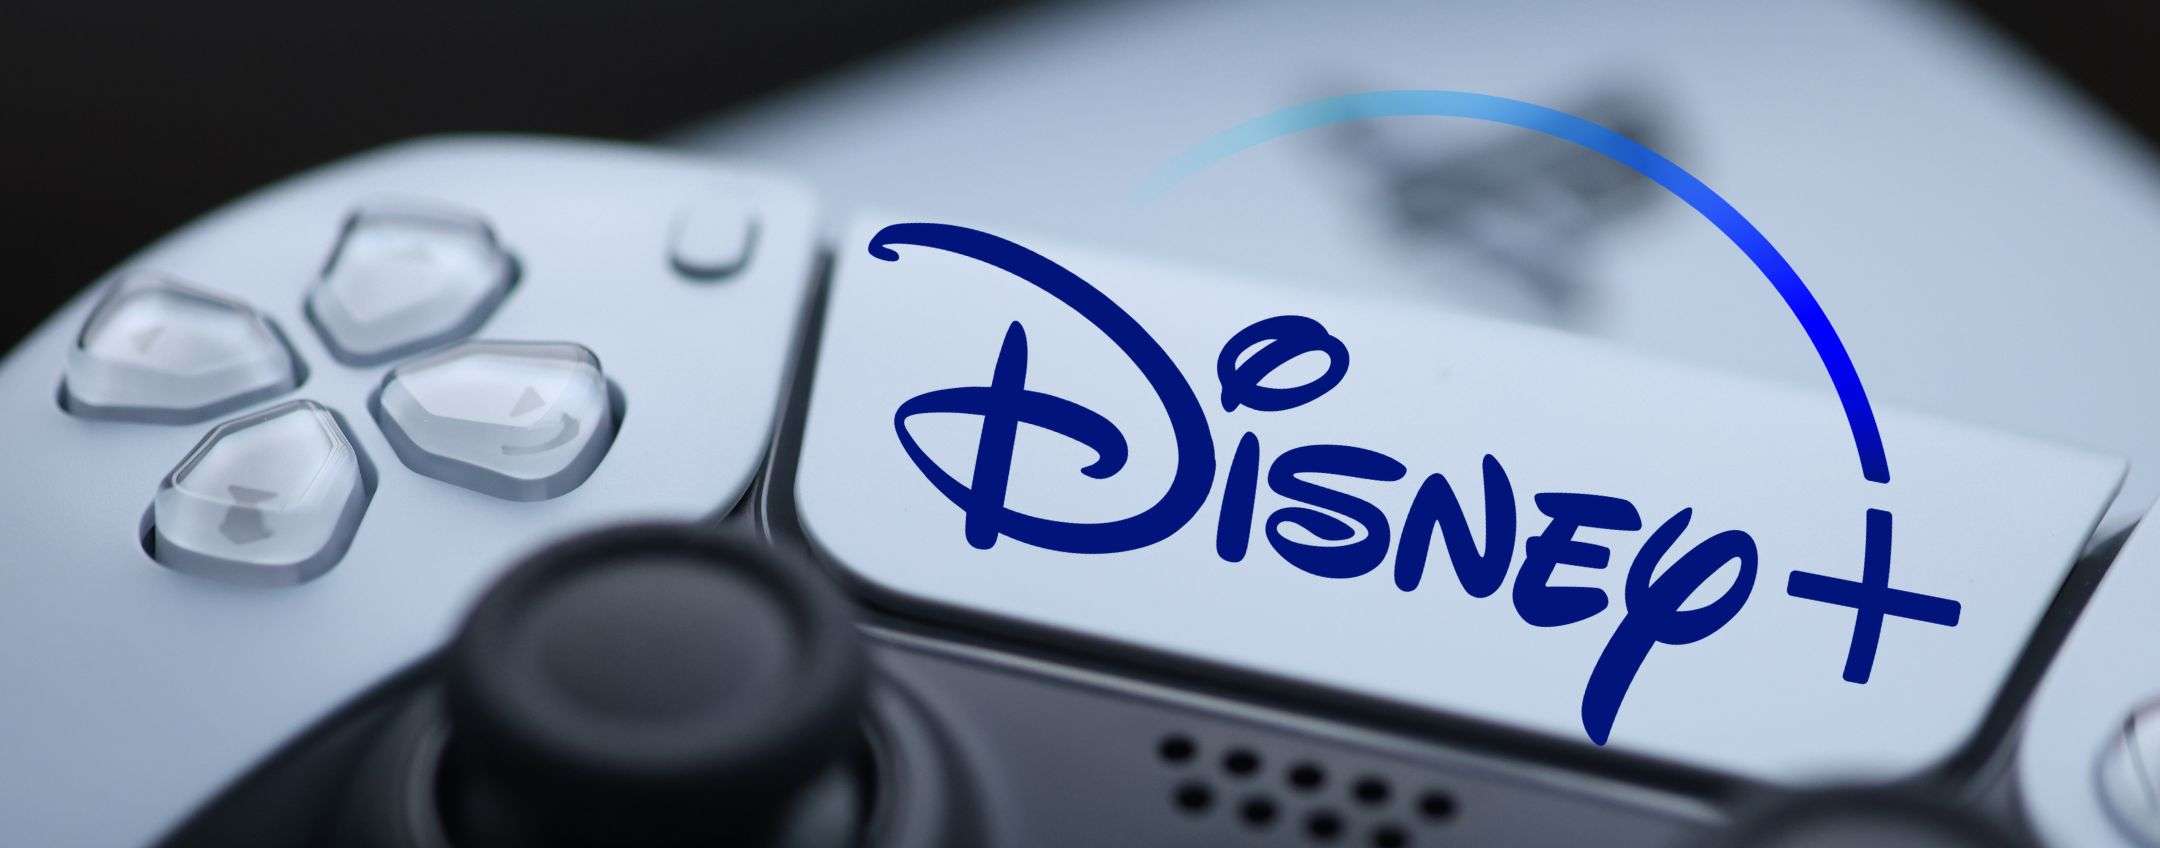 Disney+ aggiornato su PS5: ora supporta il 4K HDR nativo